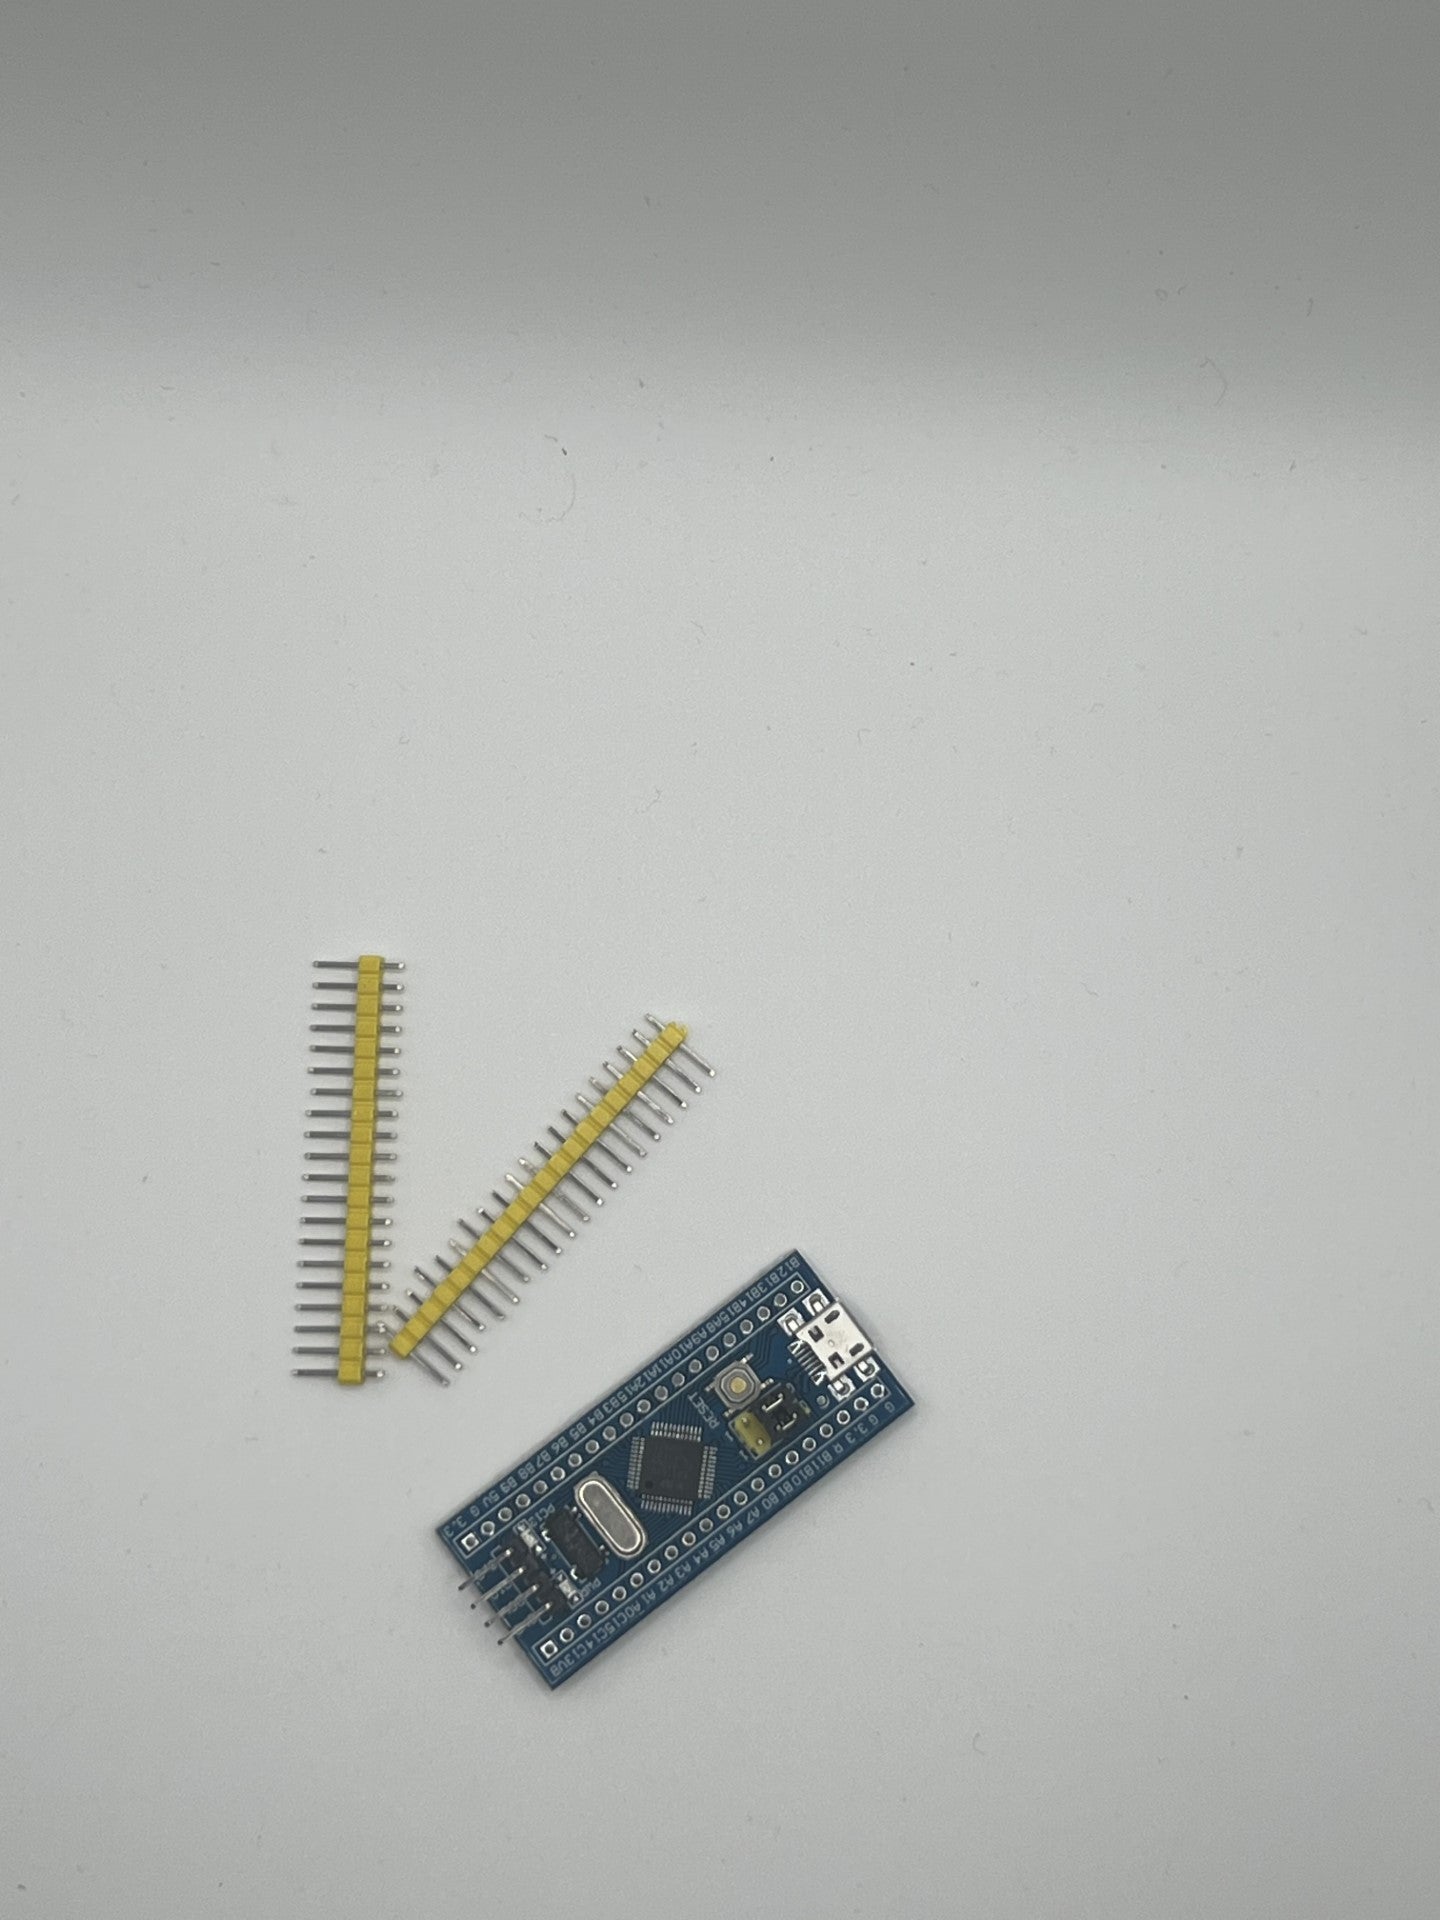 Bluepill Minimum Micro USB System Development Board.